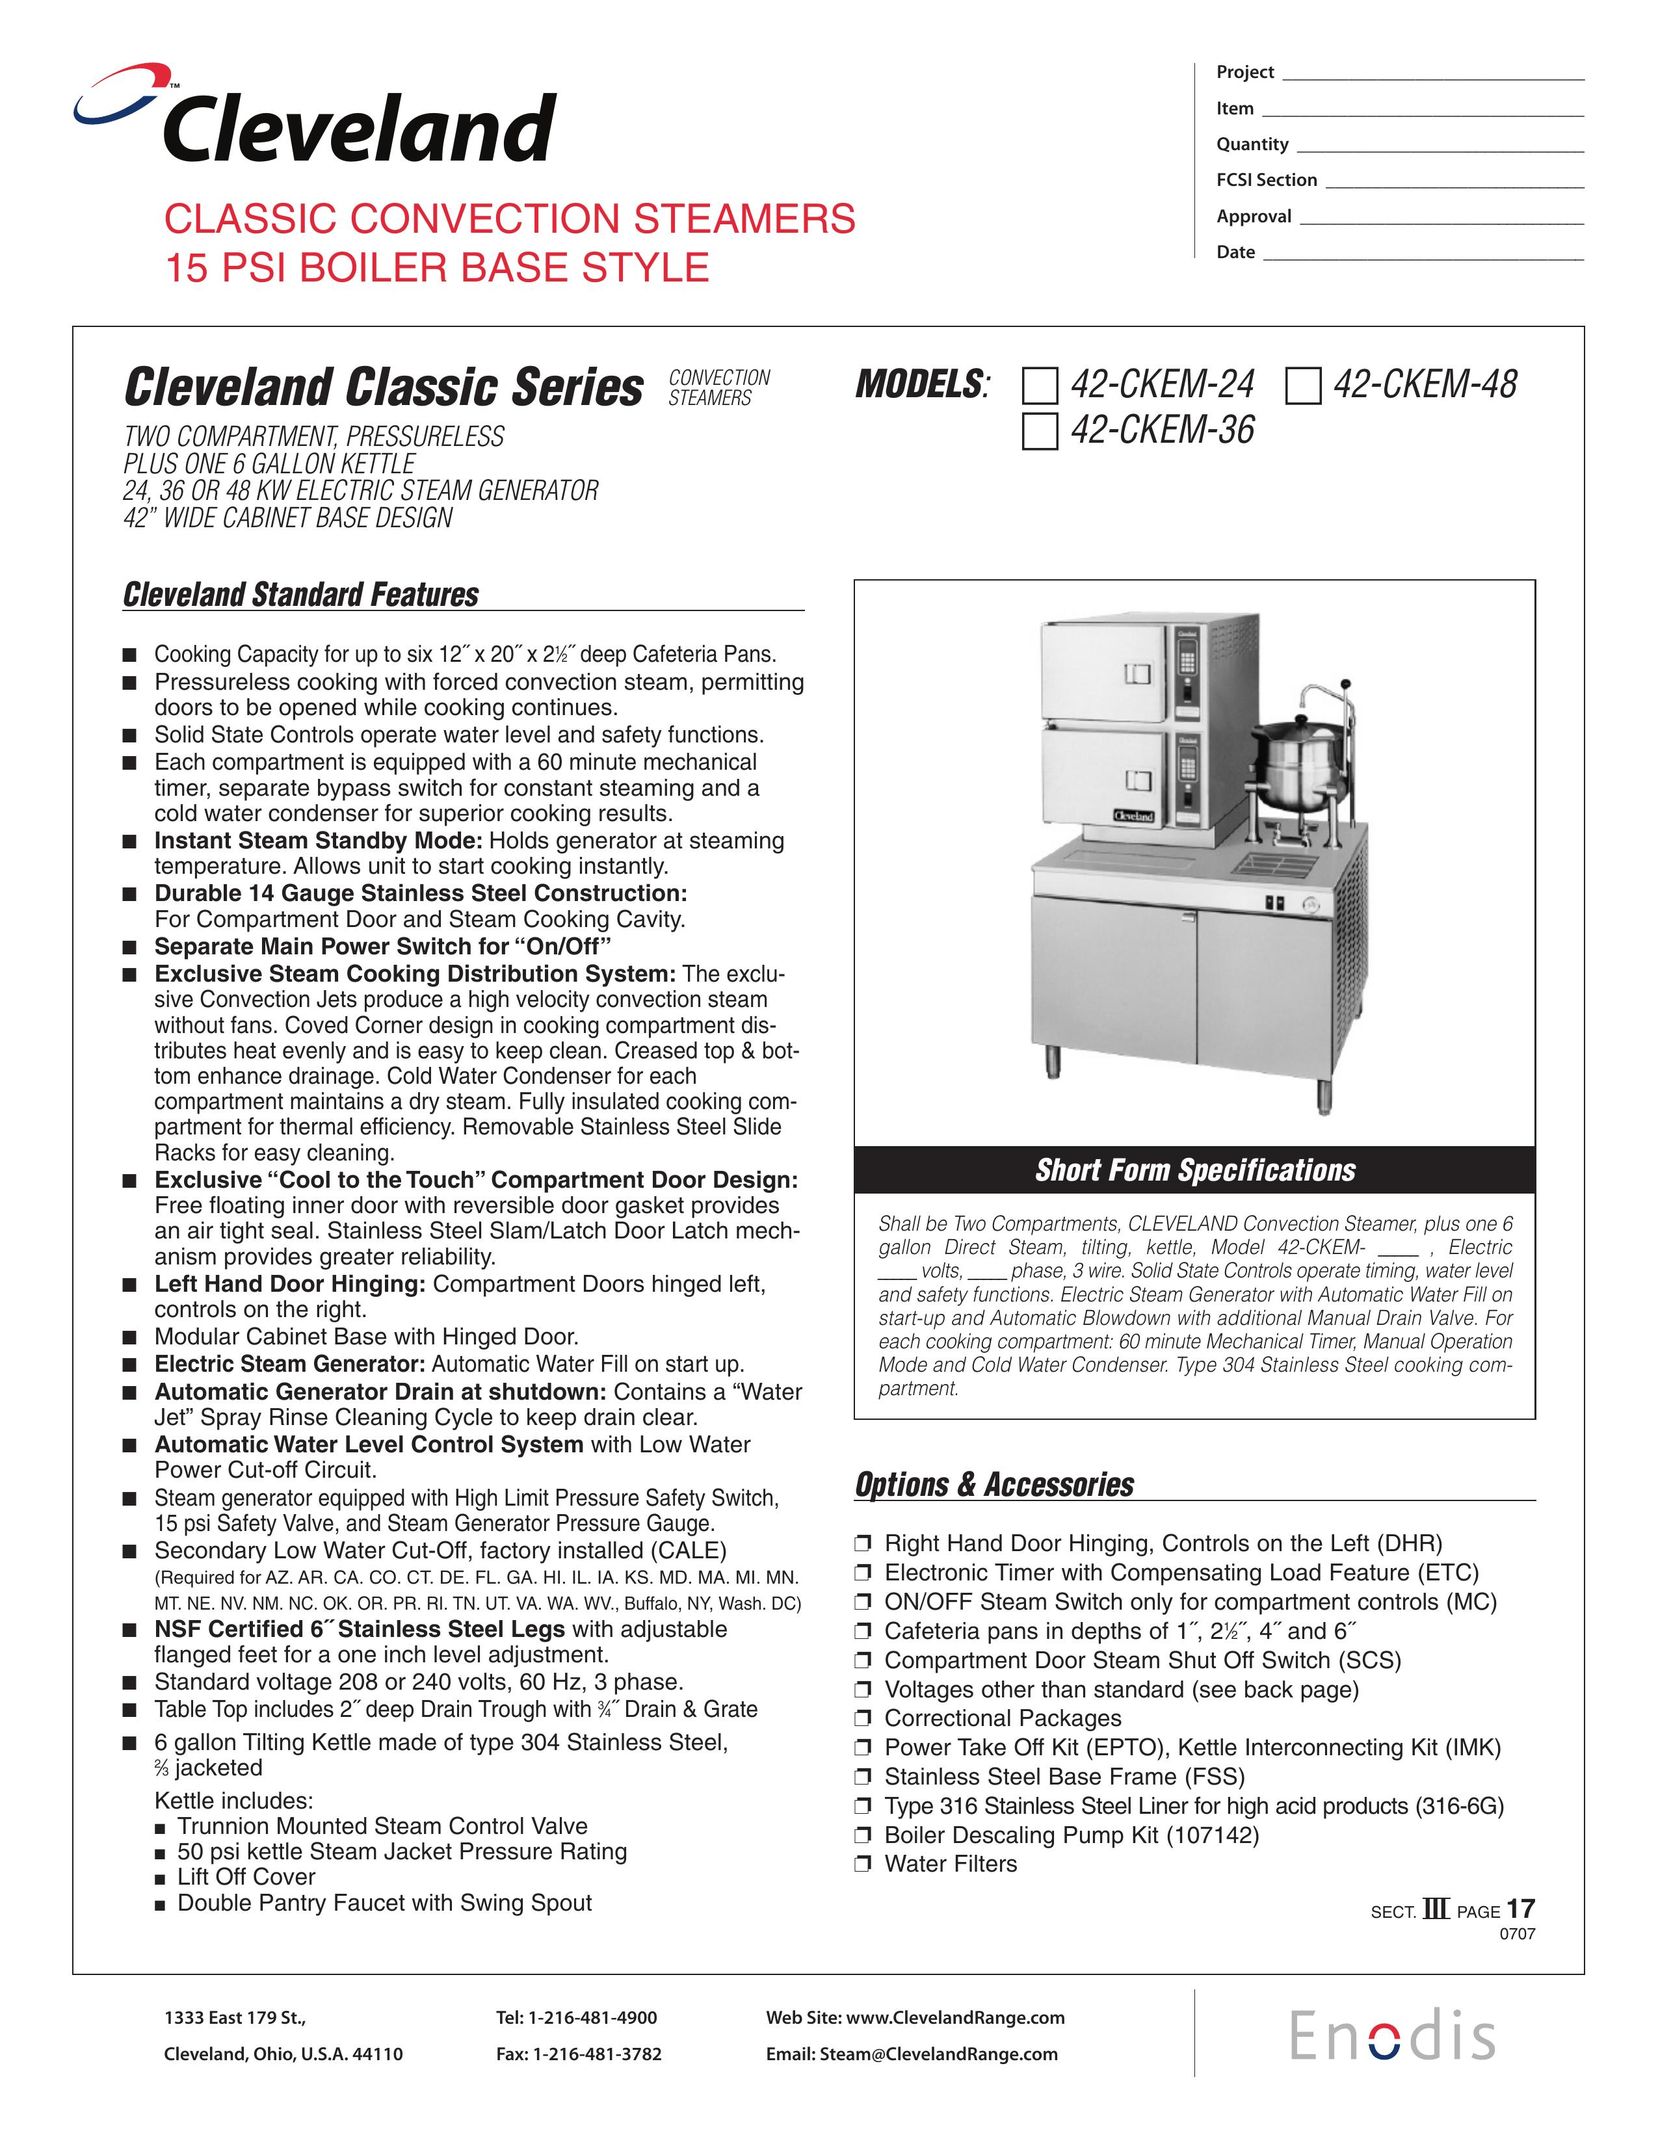 Cleveland Range 42-CKEM-36 Electric Steamer User Manual